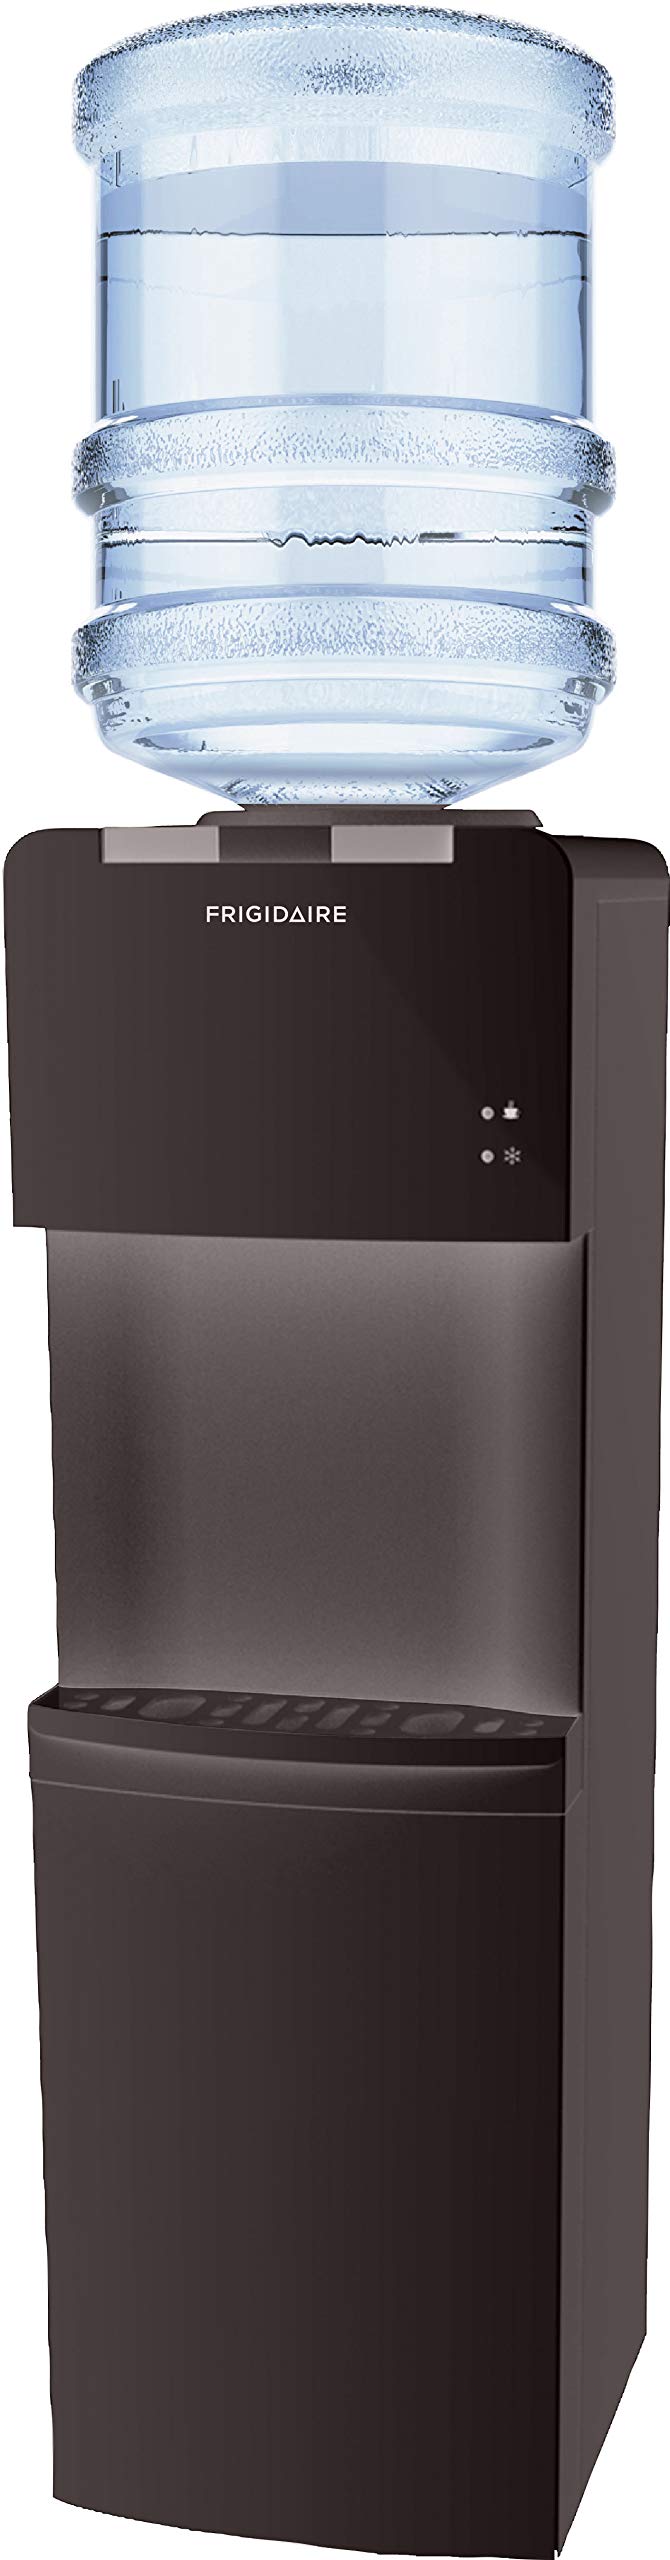 Frigidaire Refrigerador/Dispensador de Água